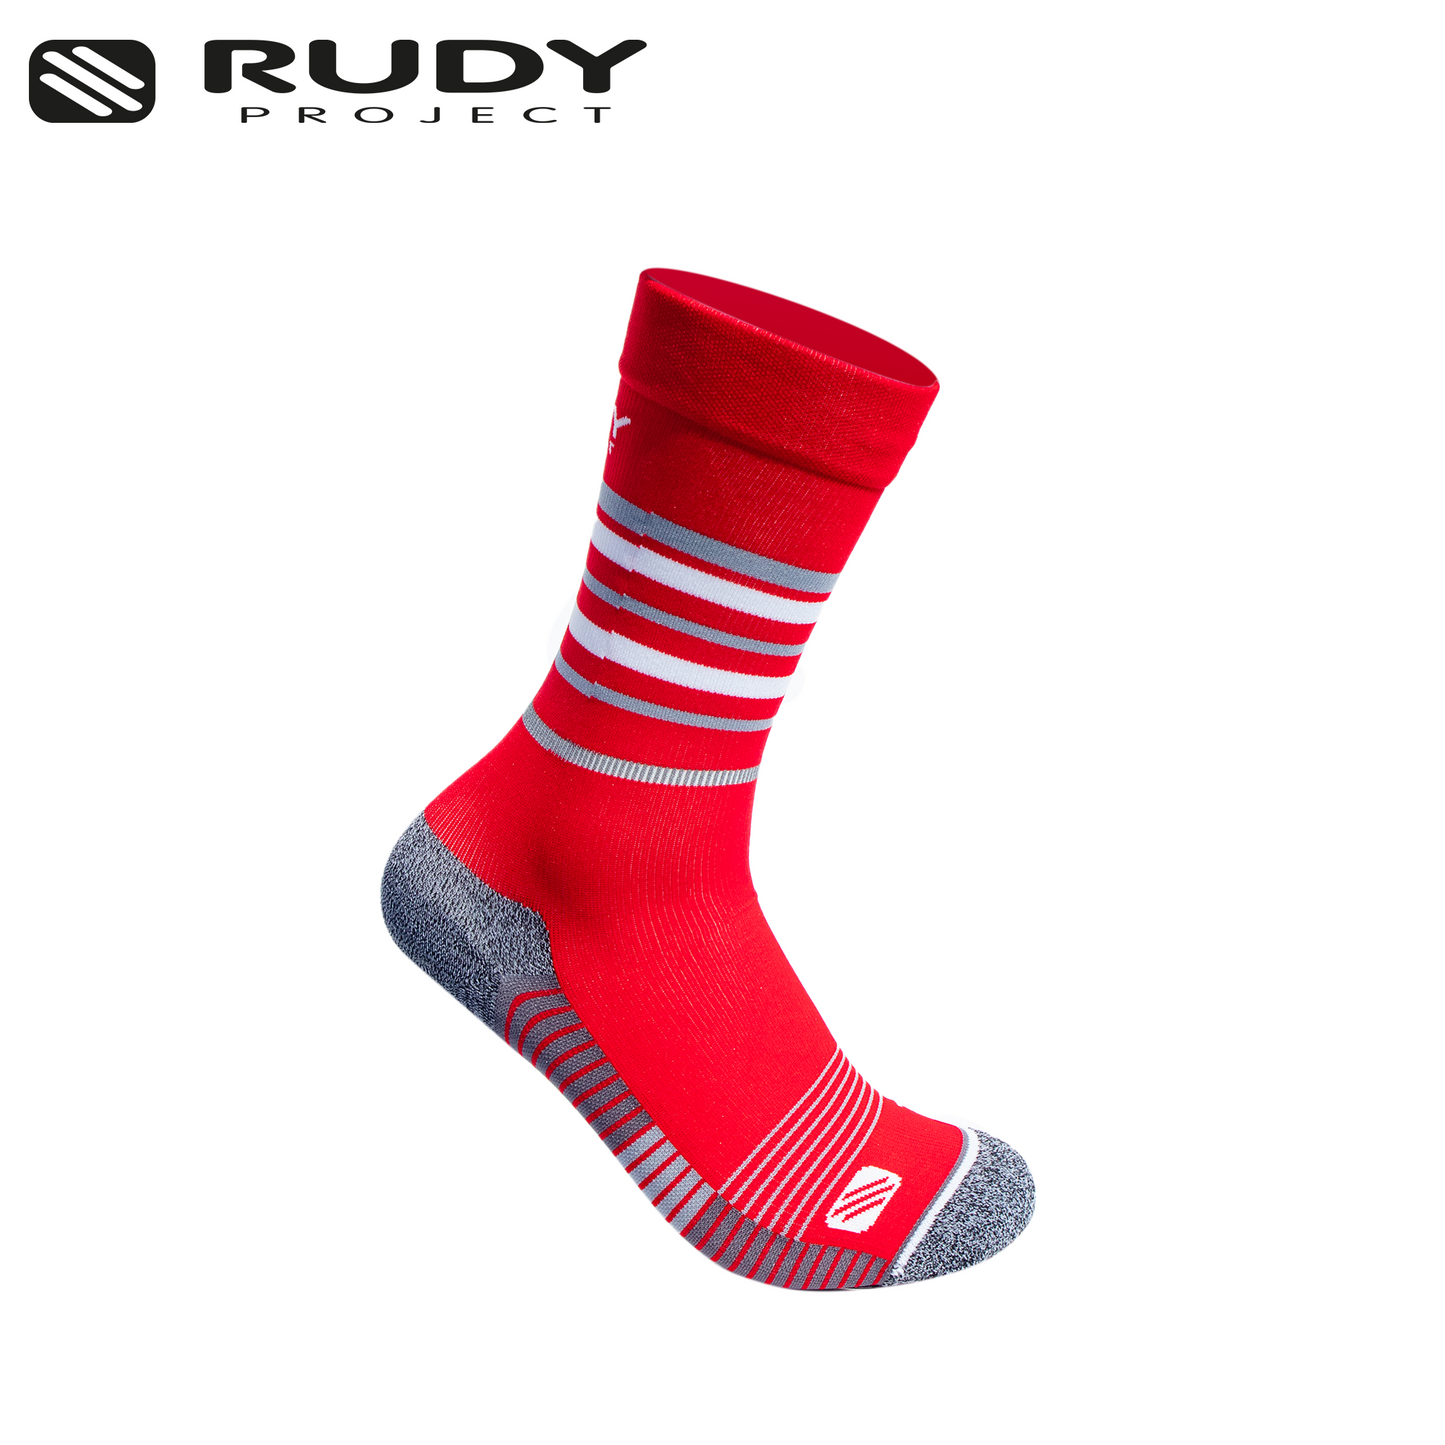 Long Cut Socks in Red